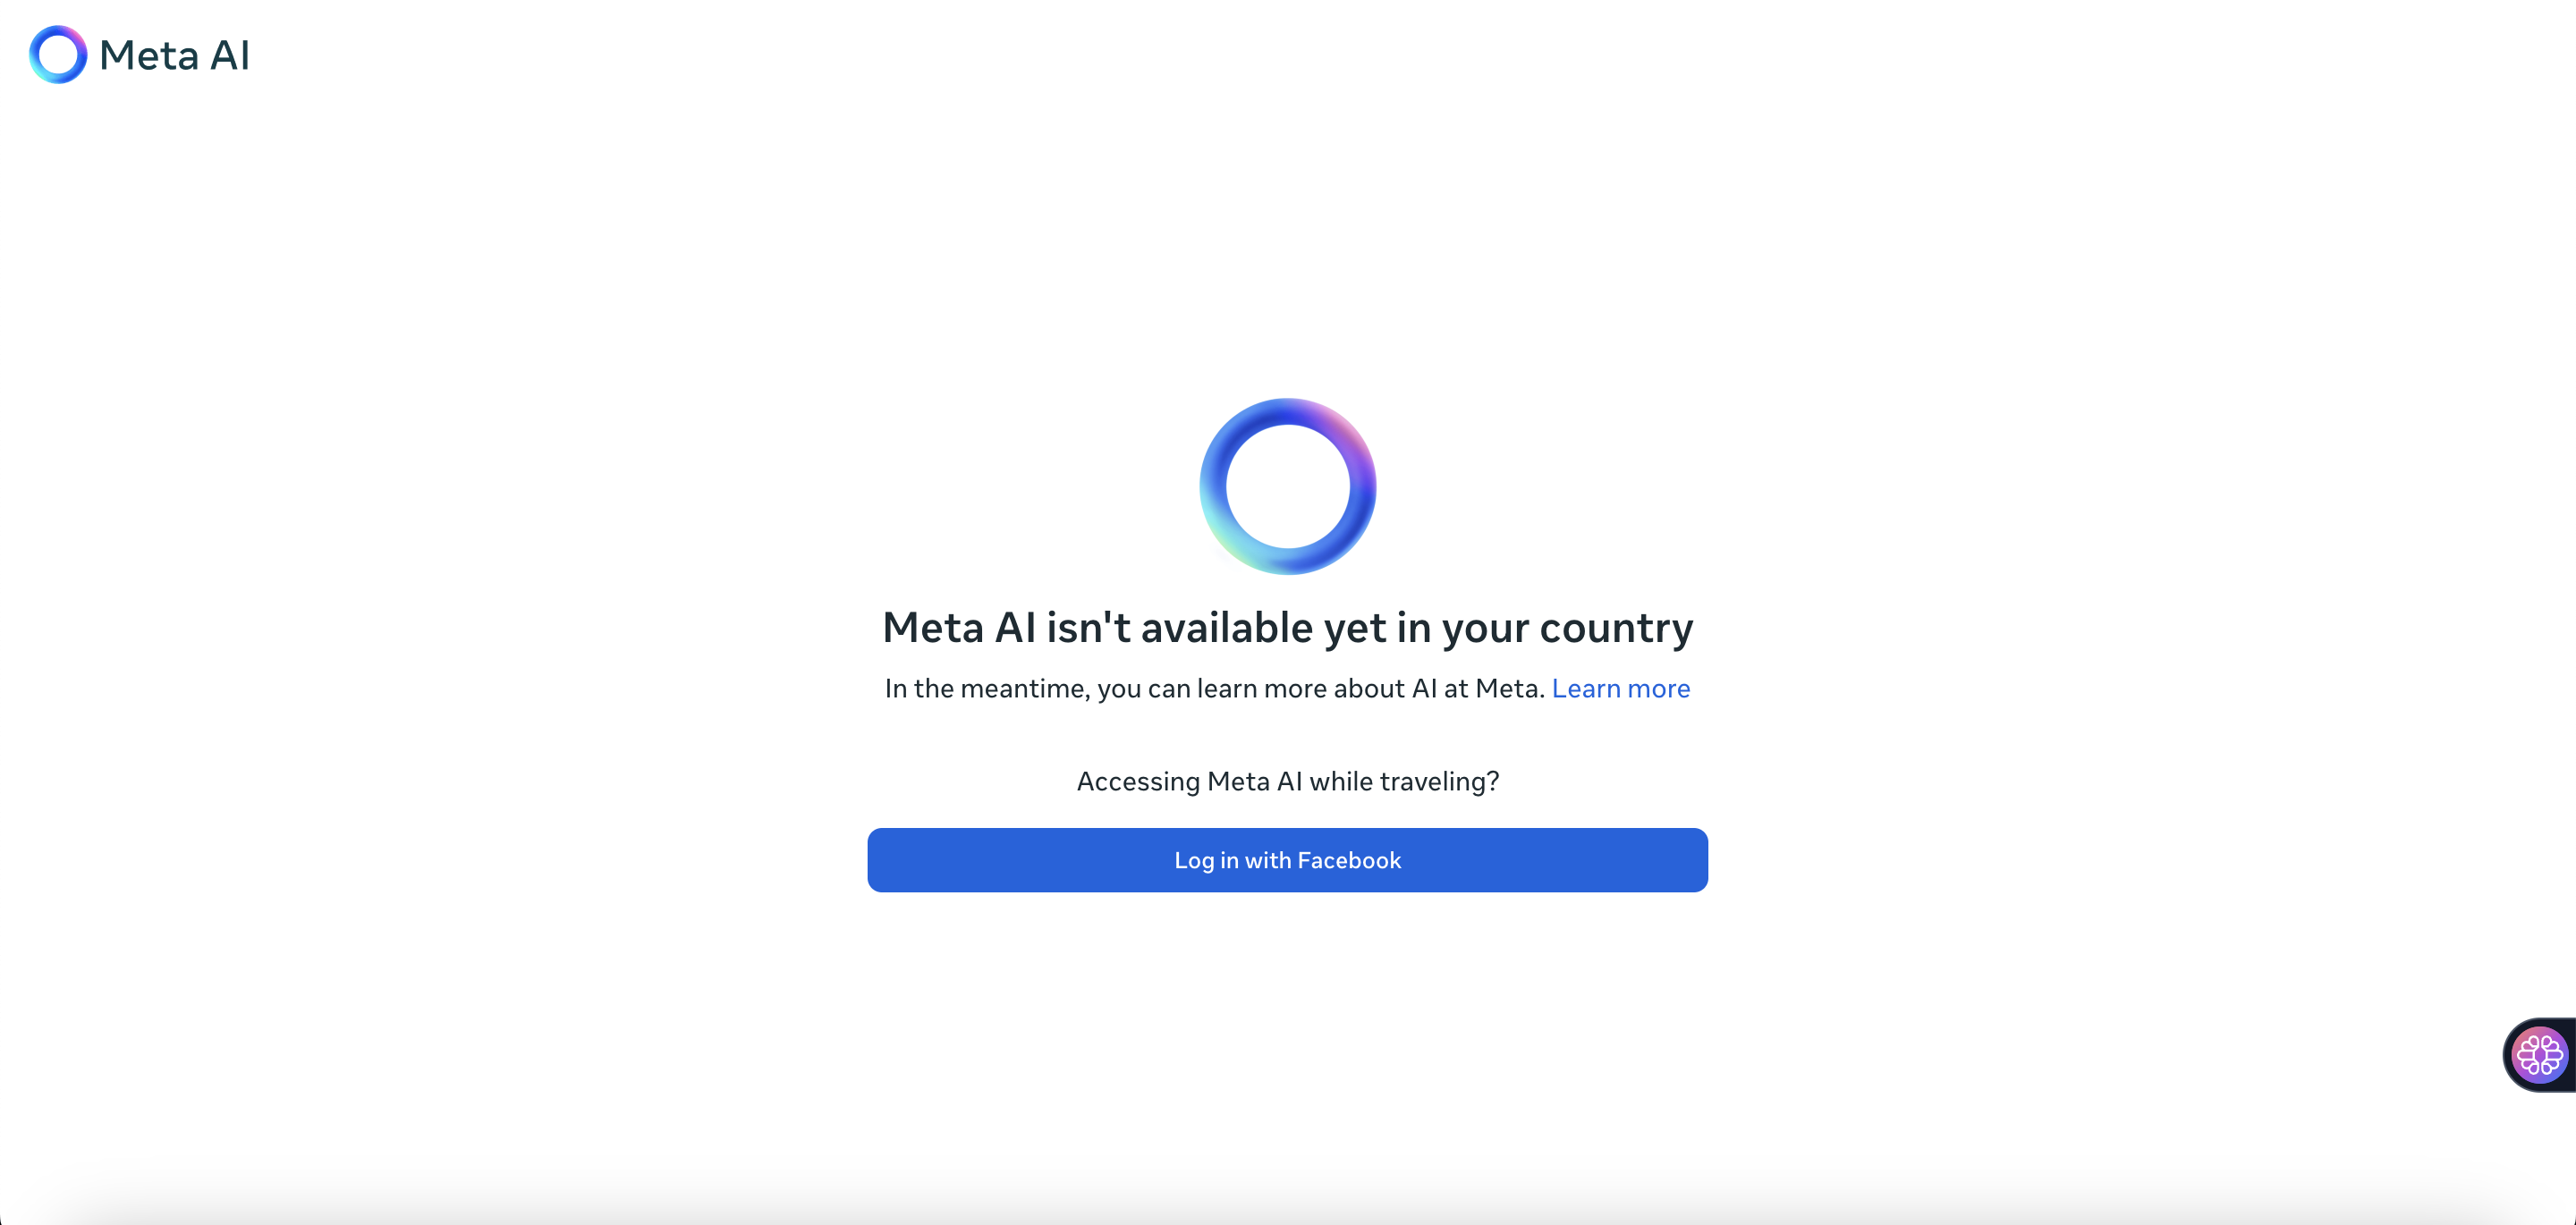 Meta AI är ännu inte tillgängligt i ditt land